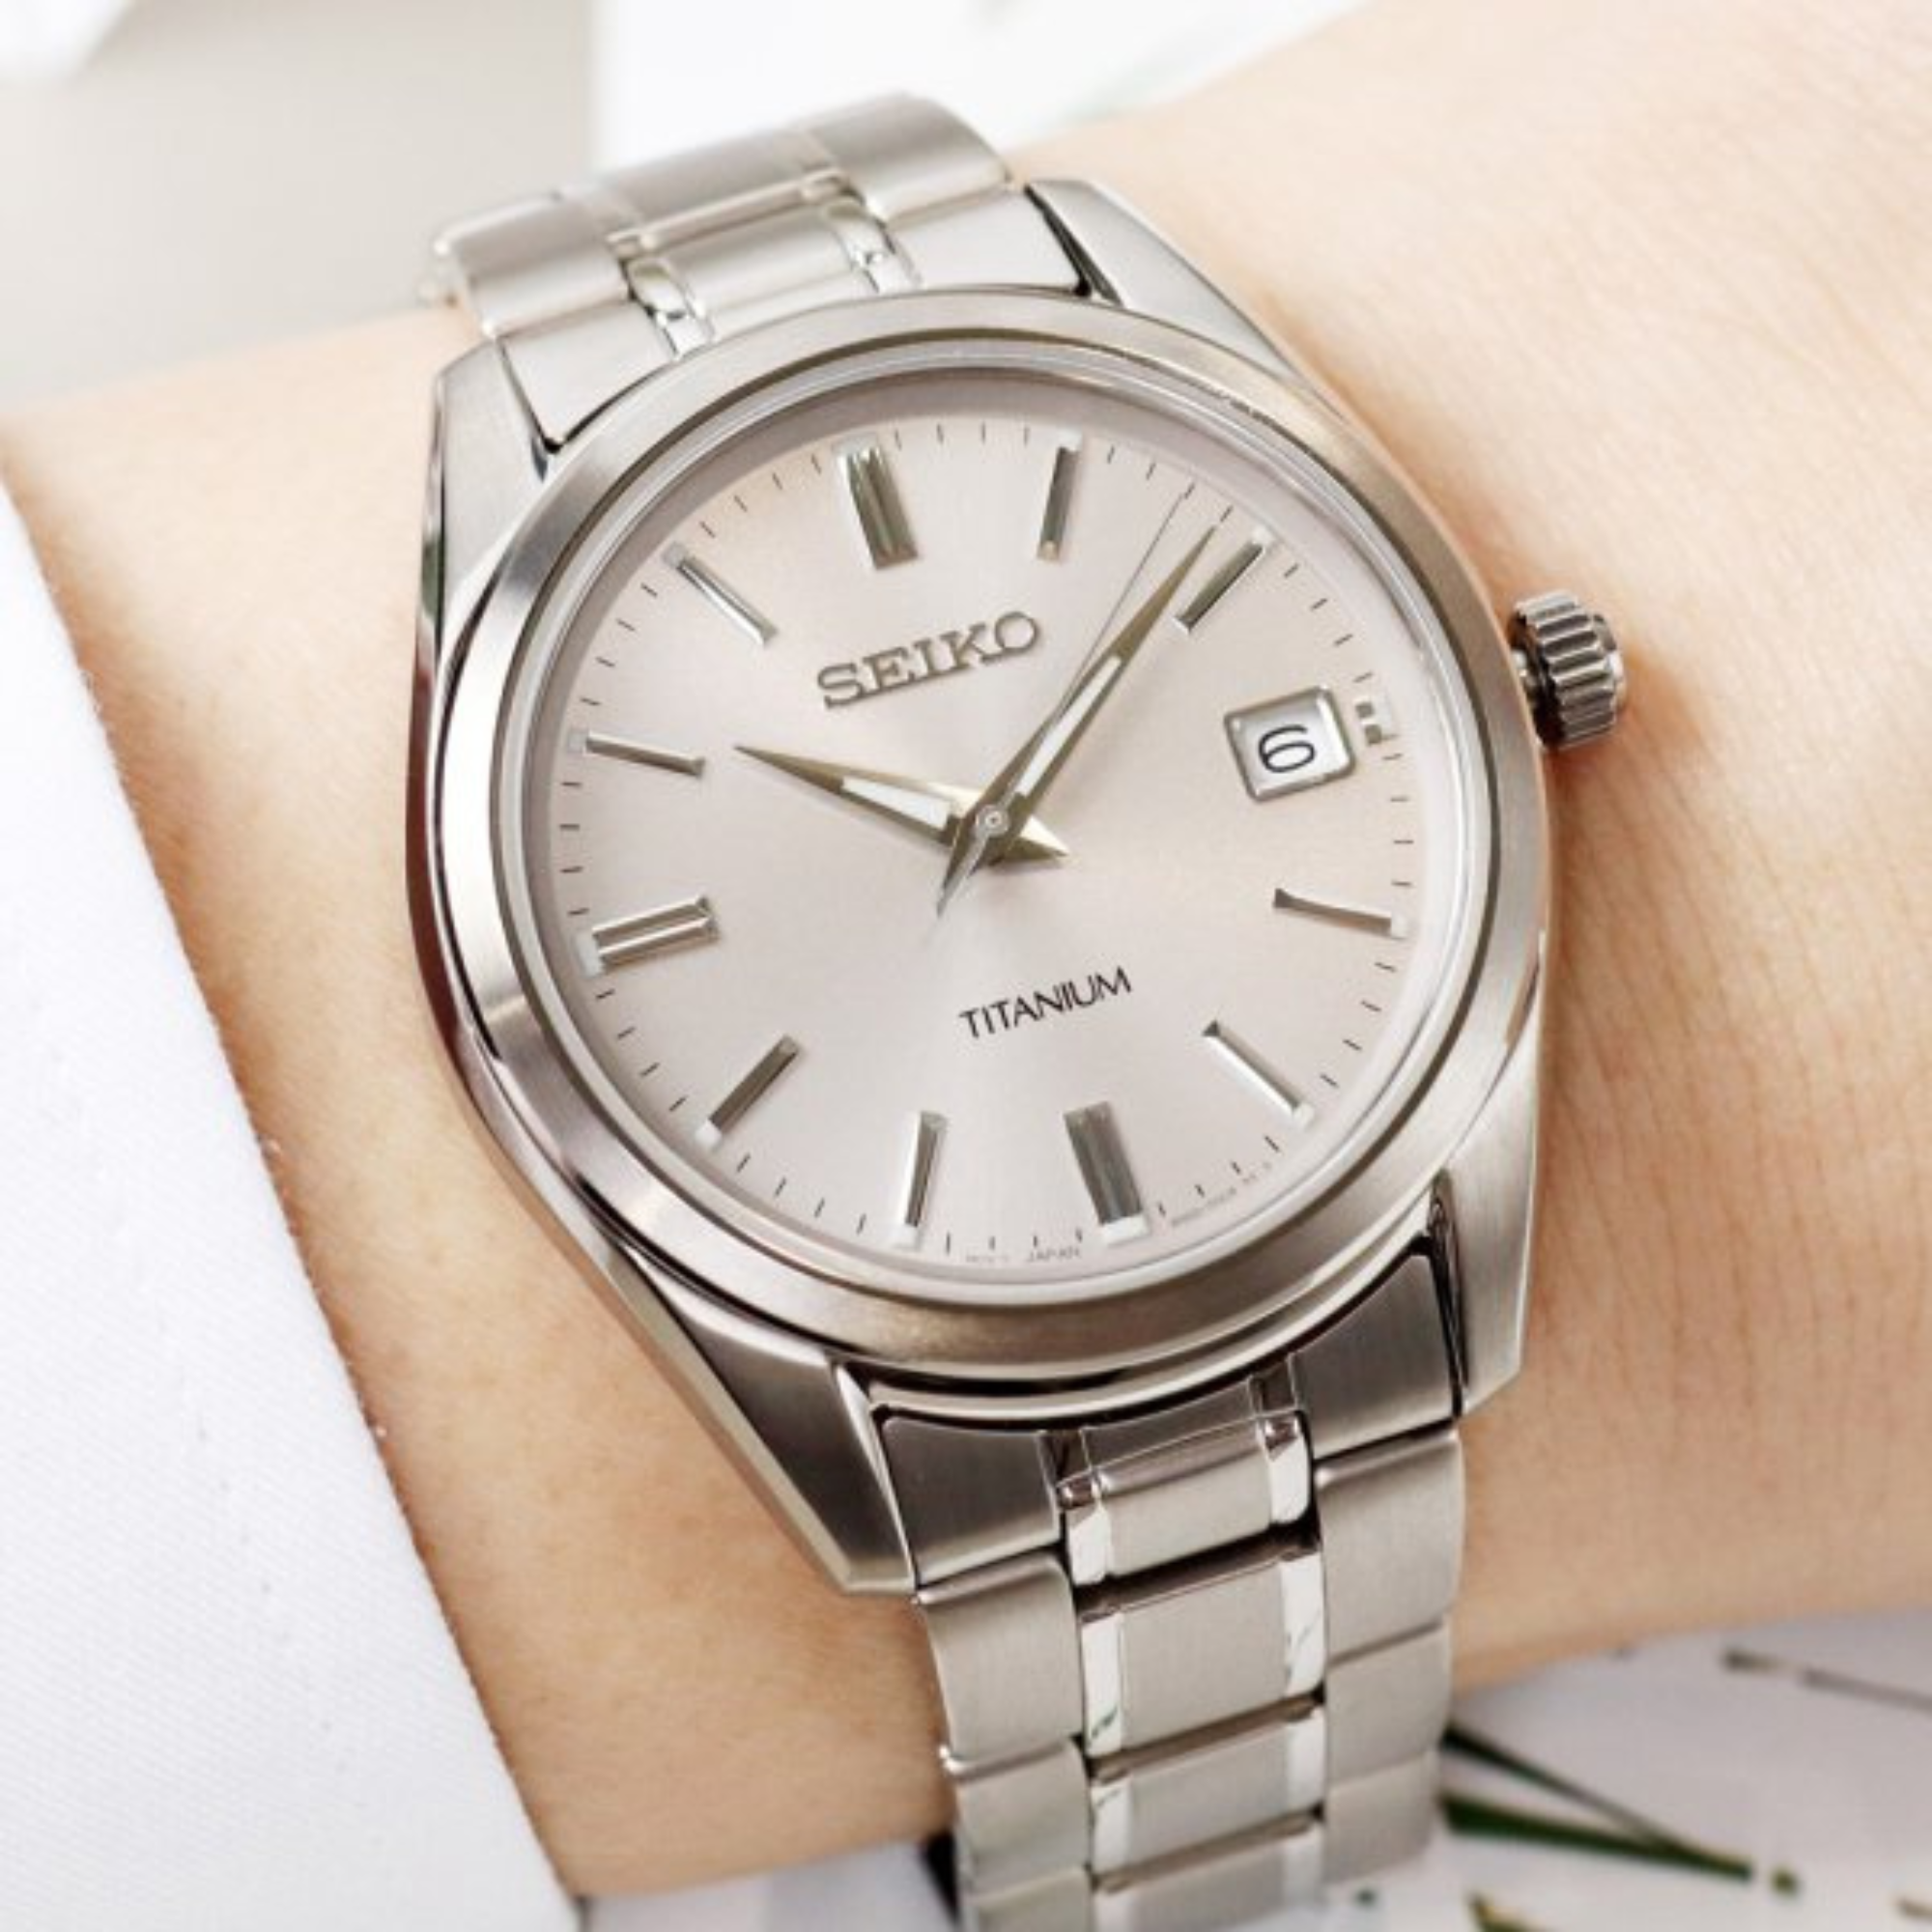 Titanium WatchNation Sunburst Bracelet SUR369P1 Men\'s Dial Conceptual Watch - Seiko Silver/Grey Quartz